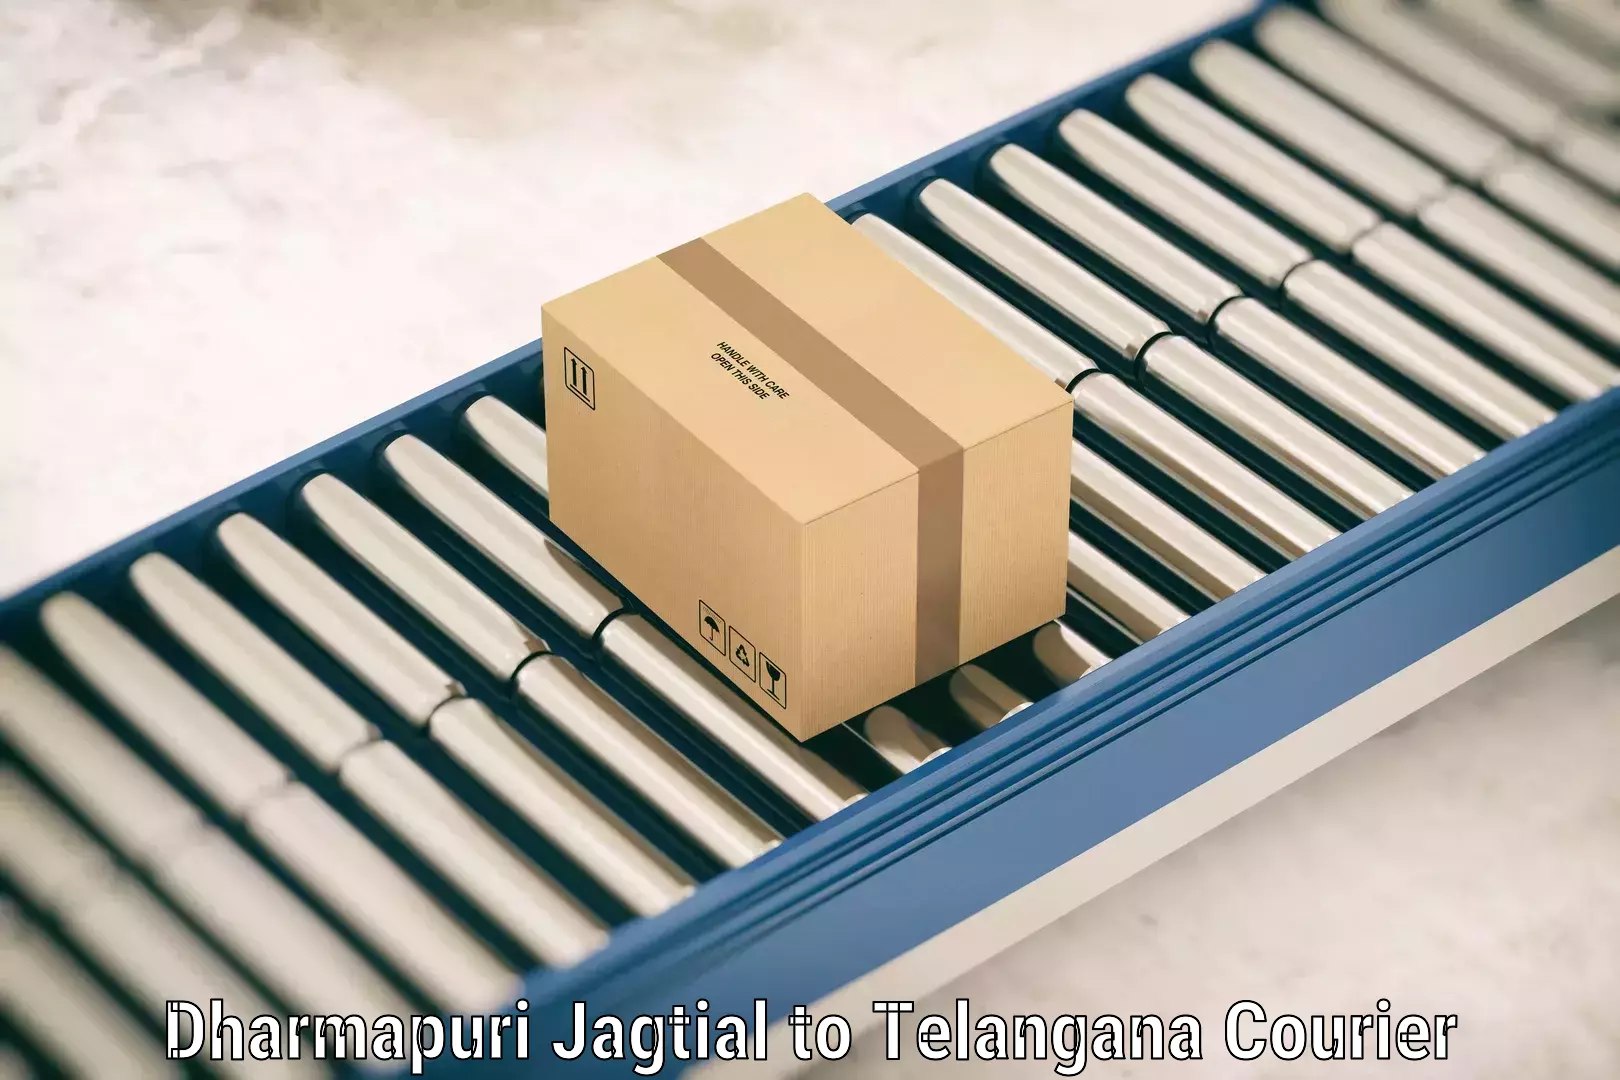 Digital baggage courier Dharmapuri Jagtial to Choutuppal